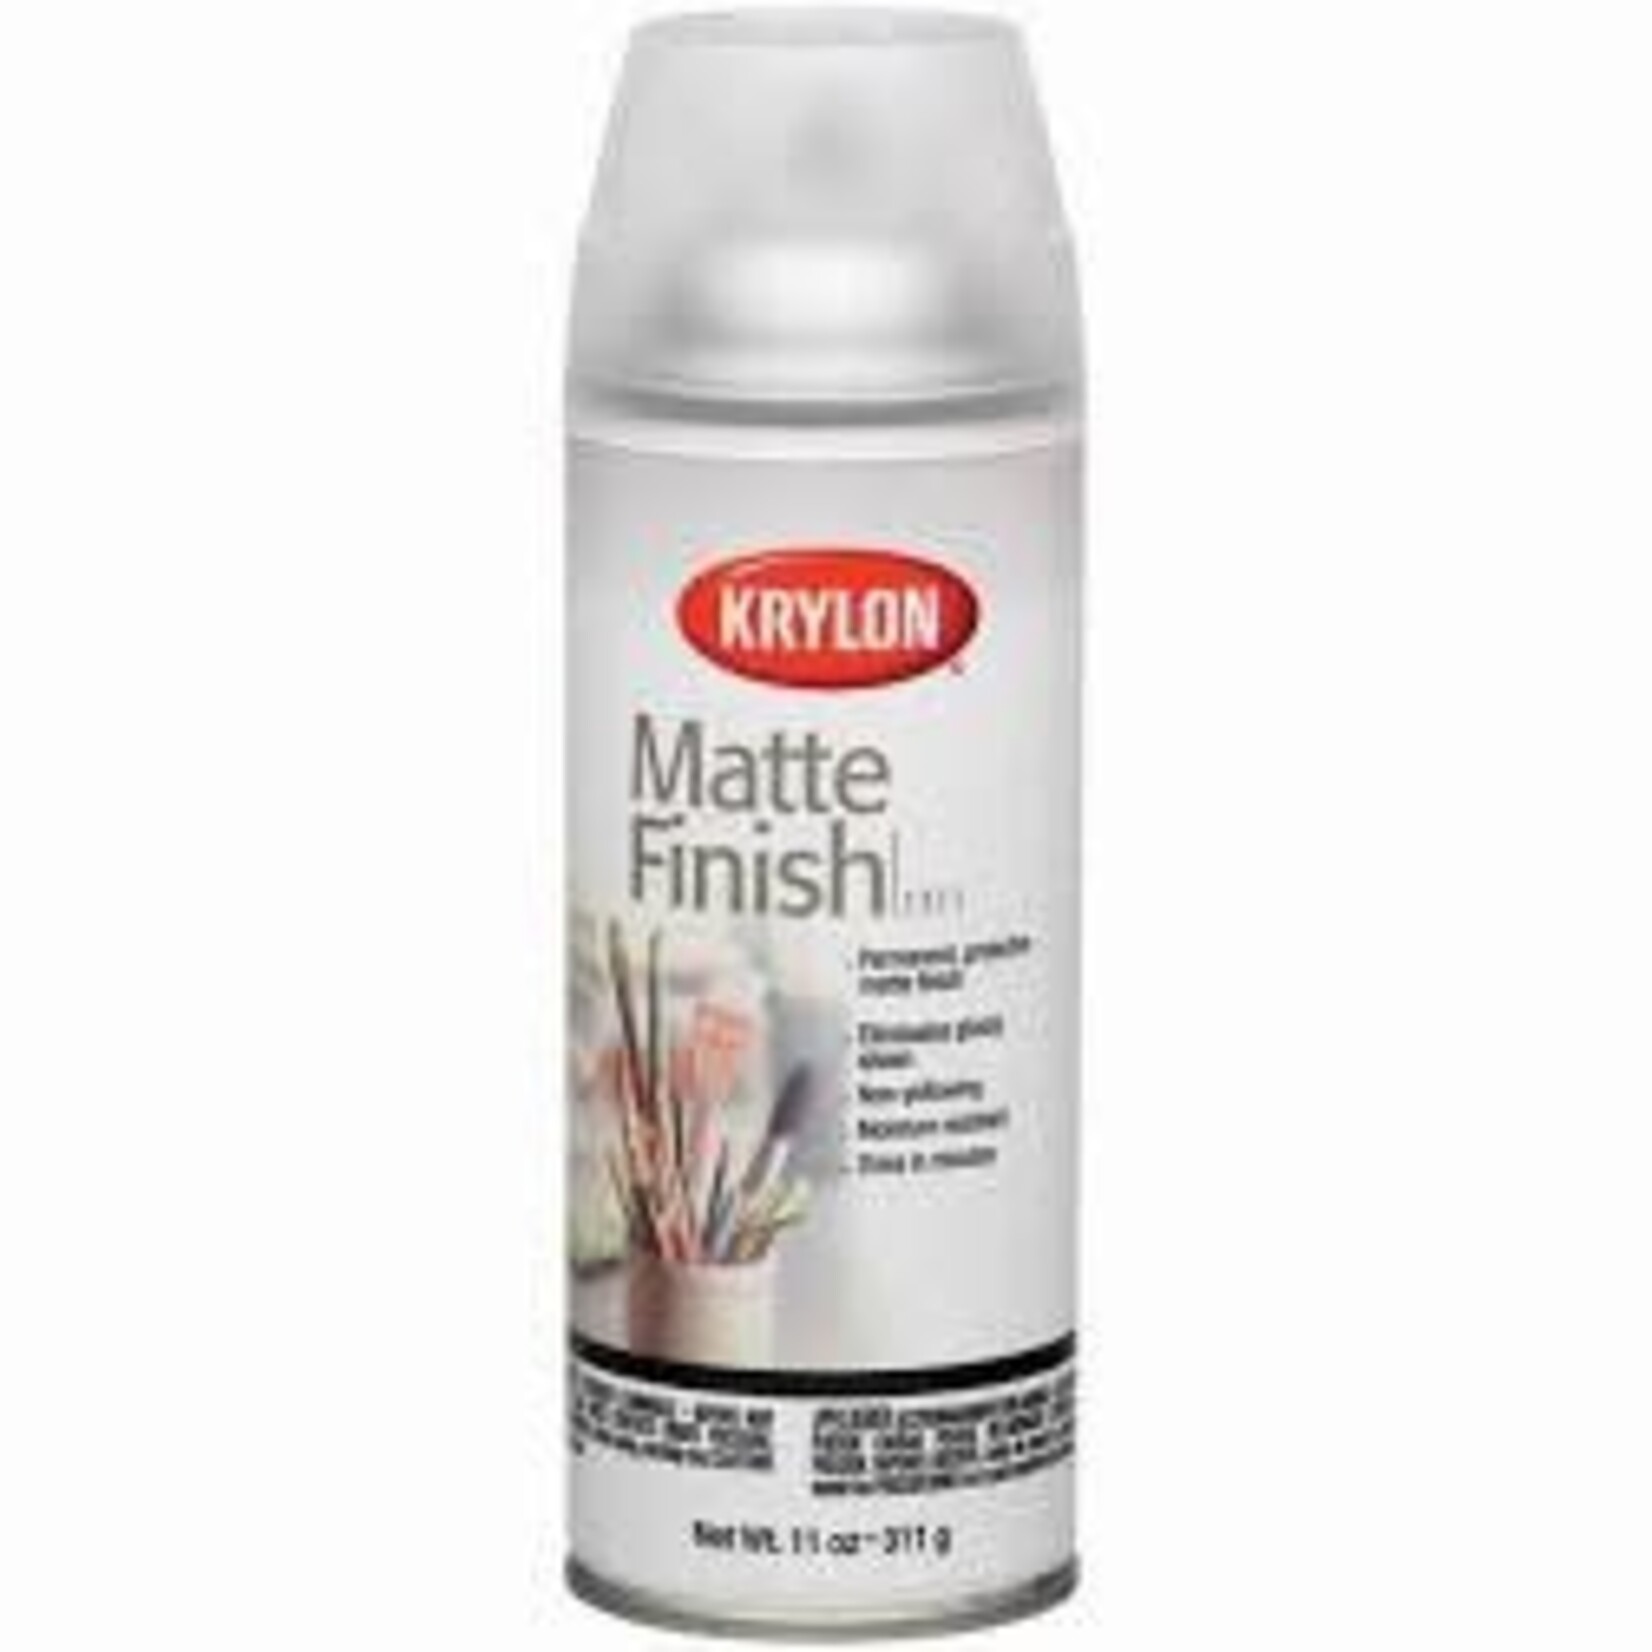 Krylon Krylon Artist & Clear Coatings Uv-Resistant Matte